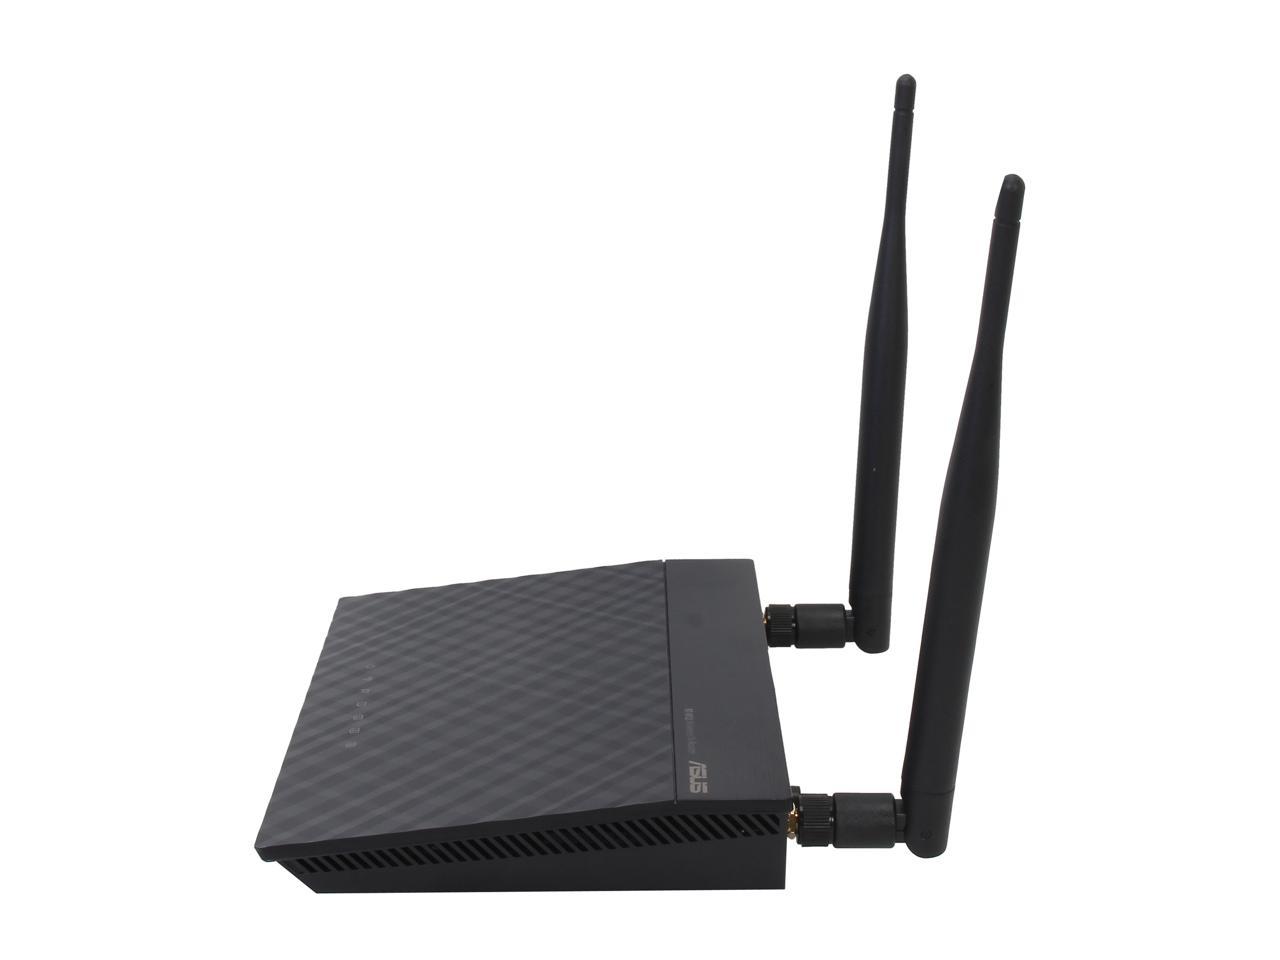 Asus Rt-N12/D1 Wireless-N300 3-In-1 Router/ Ap/ Range Extender